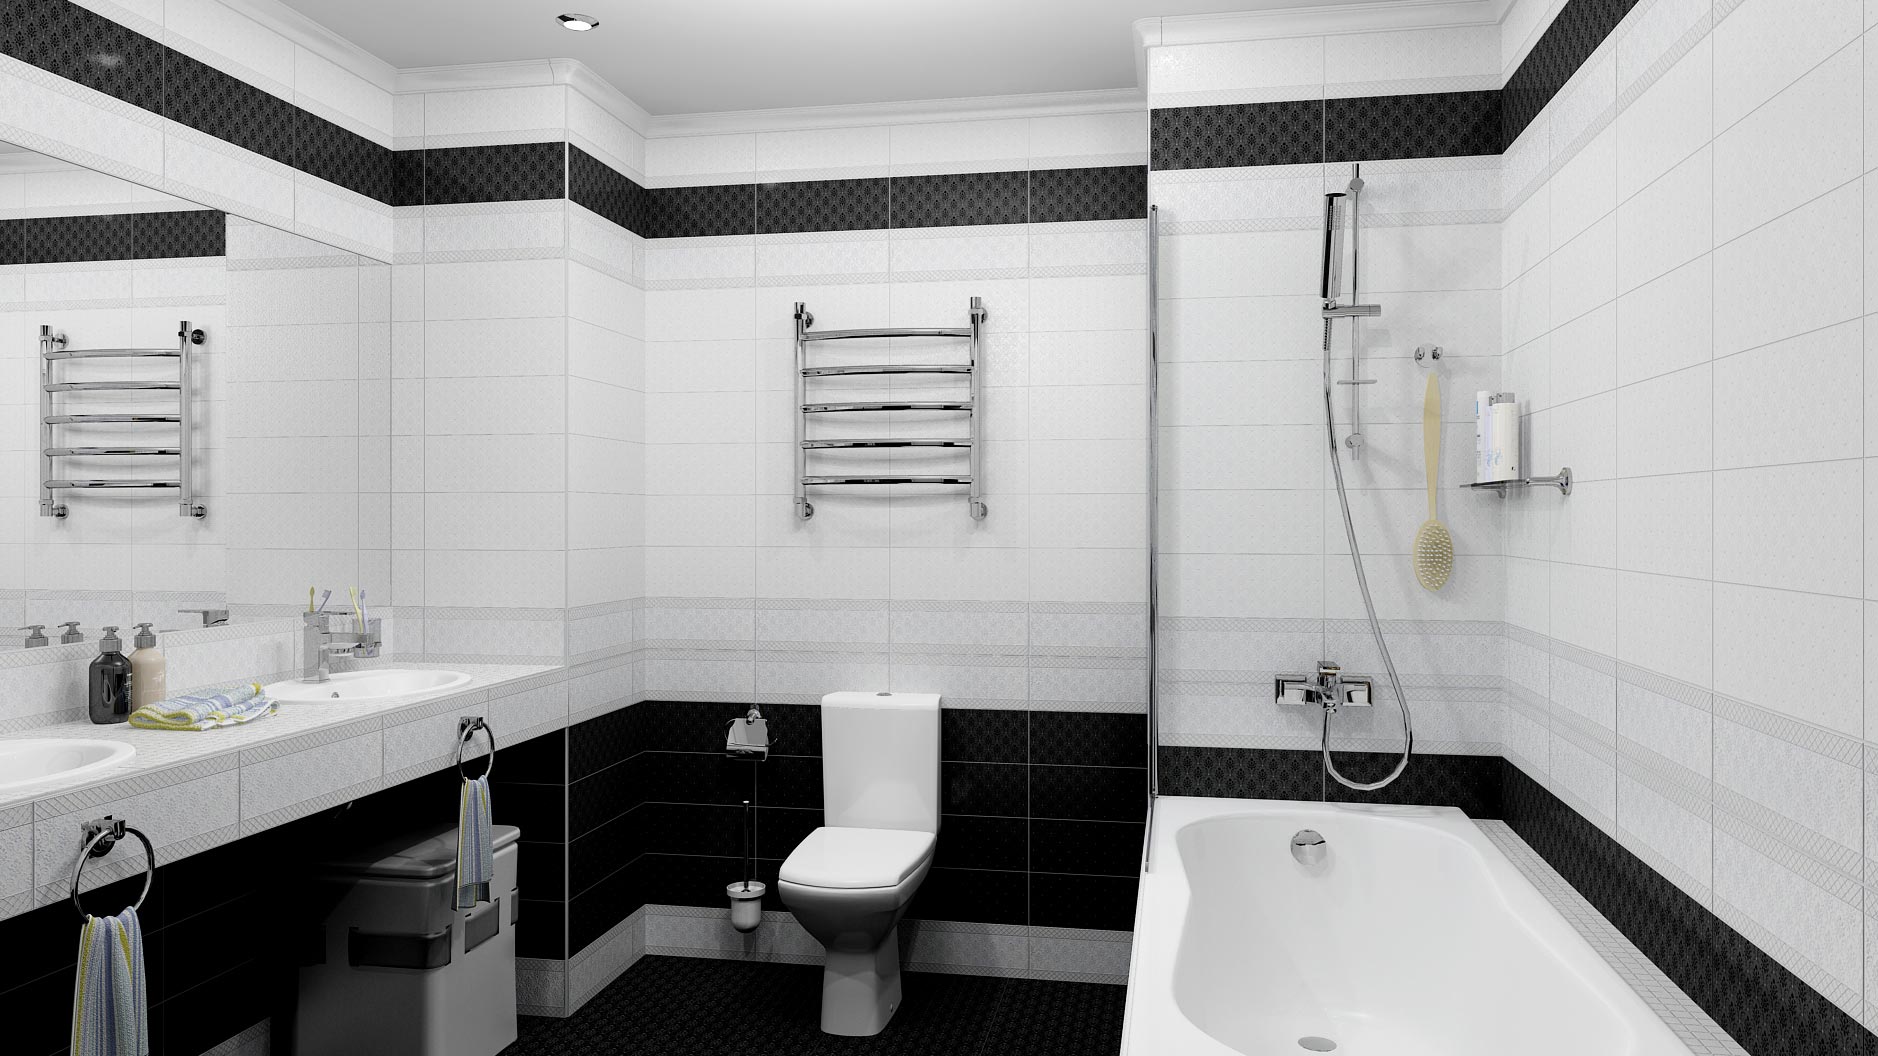 Плитка Kerama Marazzi для ванной: особенности, варианты применения в интерьере